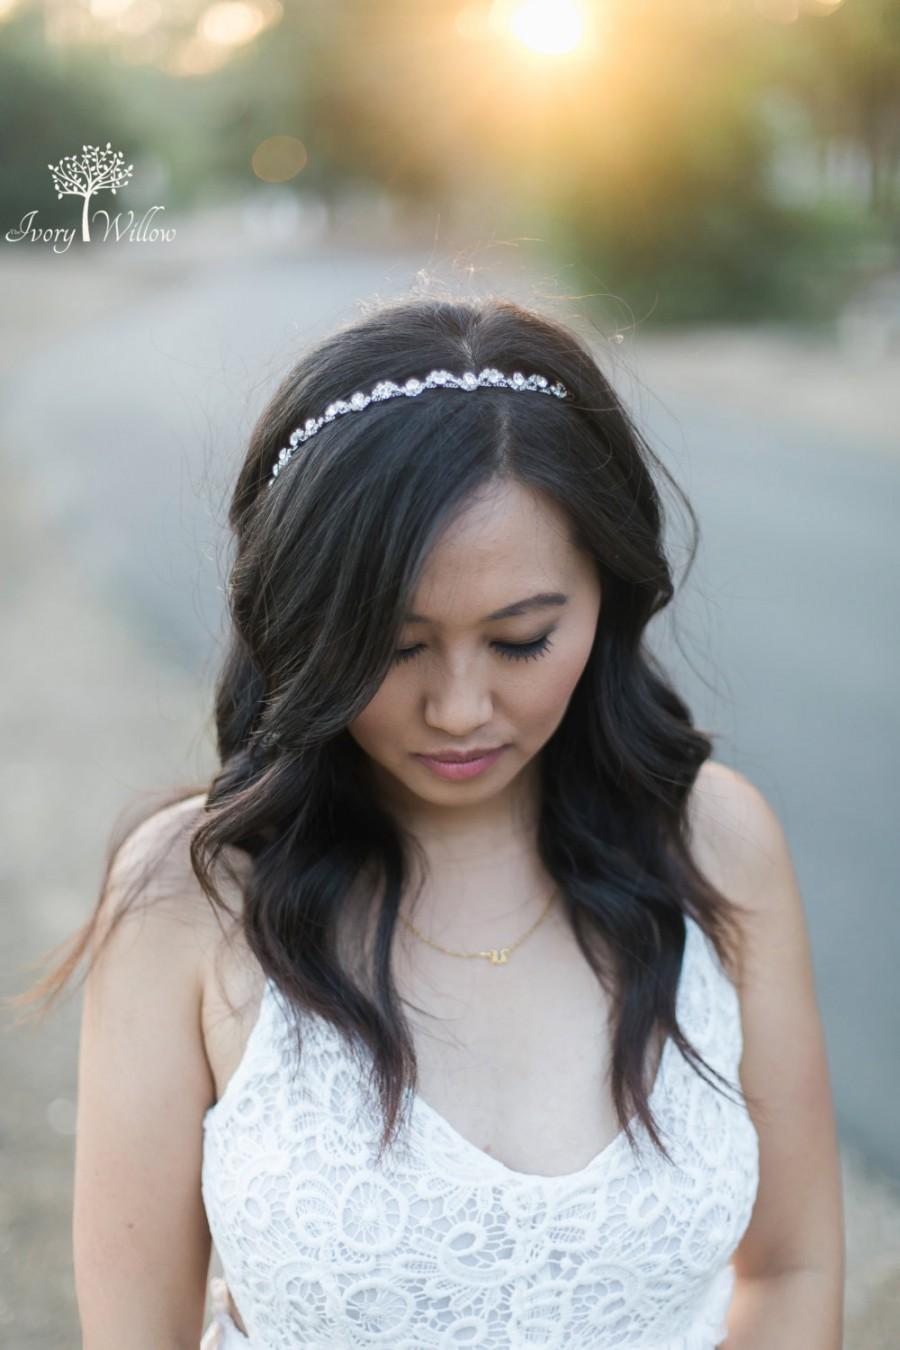 زفاف - Crystal Wedding Headband - Bridal Headband - Silver Tie back Headband - Photo Prop - Wedding Headpiece - Bridal Headpiece - Bridesmaid